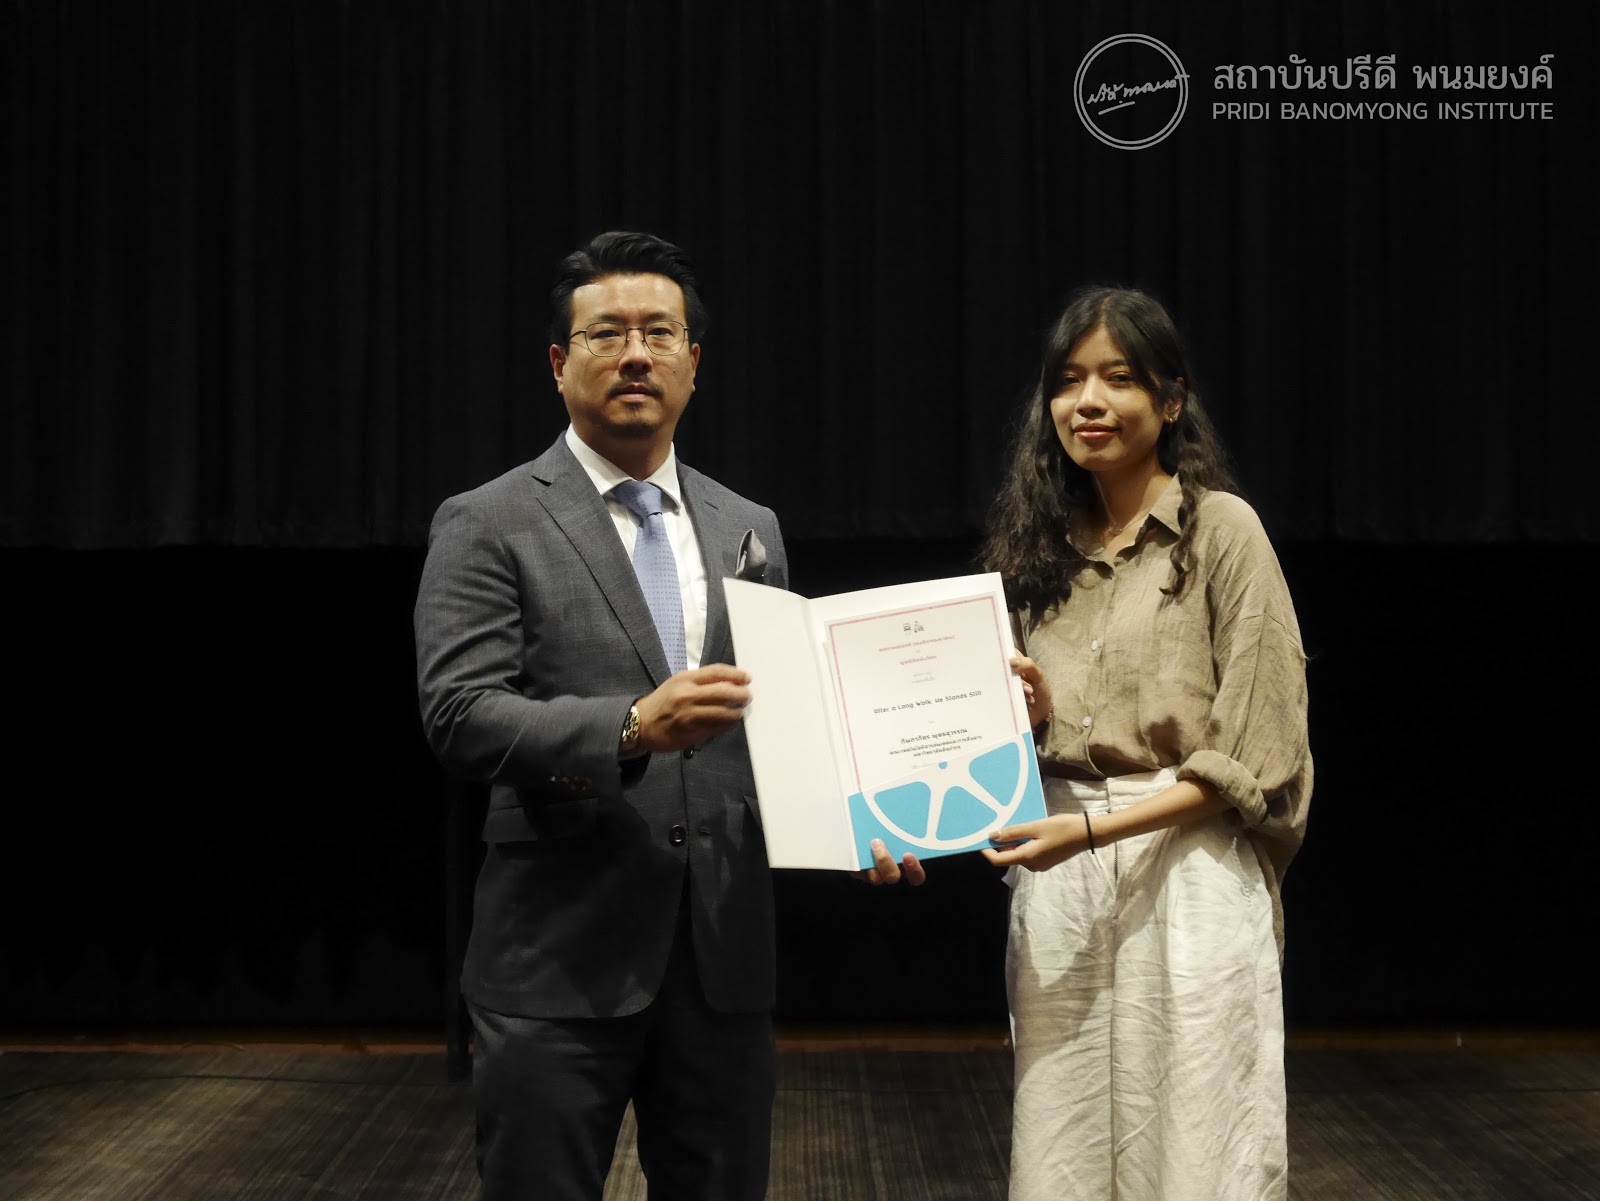 นายปรีดิวิชญ์ พนมยงค์ เป็นตัวแทนทายาทนายปรีดี พนมยงค์ มอบรางวัลช้างเผือก แก่ผู้ชนะการประกวดหนังสั้น ในเทศกาลภาพยนต์สั้นครั้งที่ 24 (24th Thai Short Film and Video Festival)